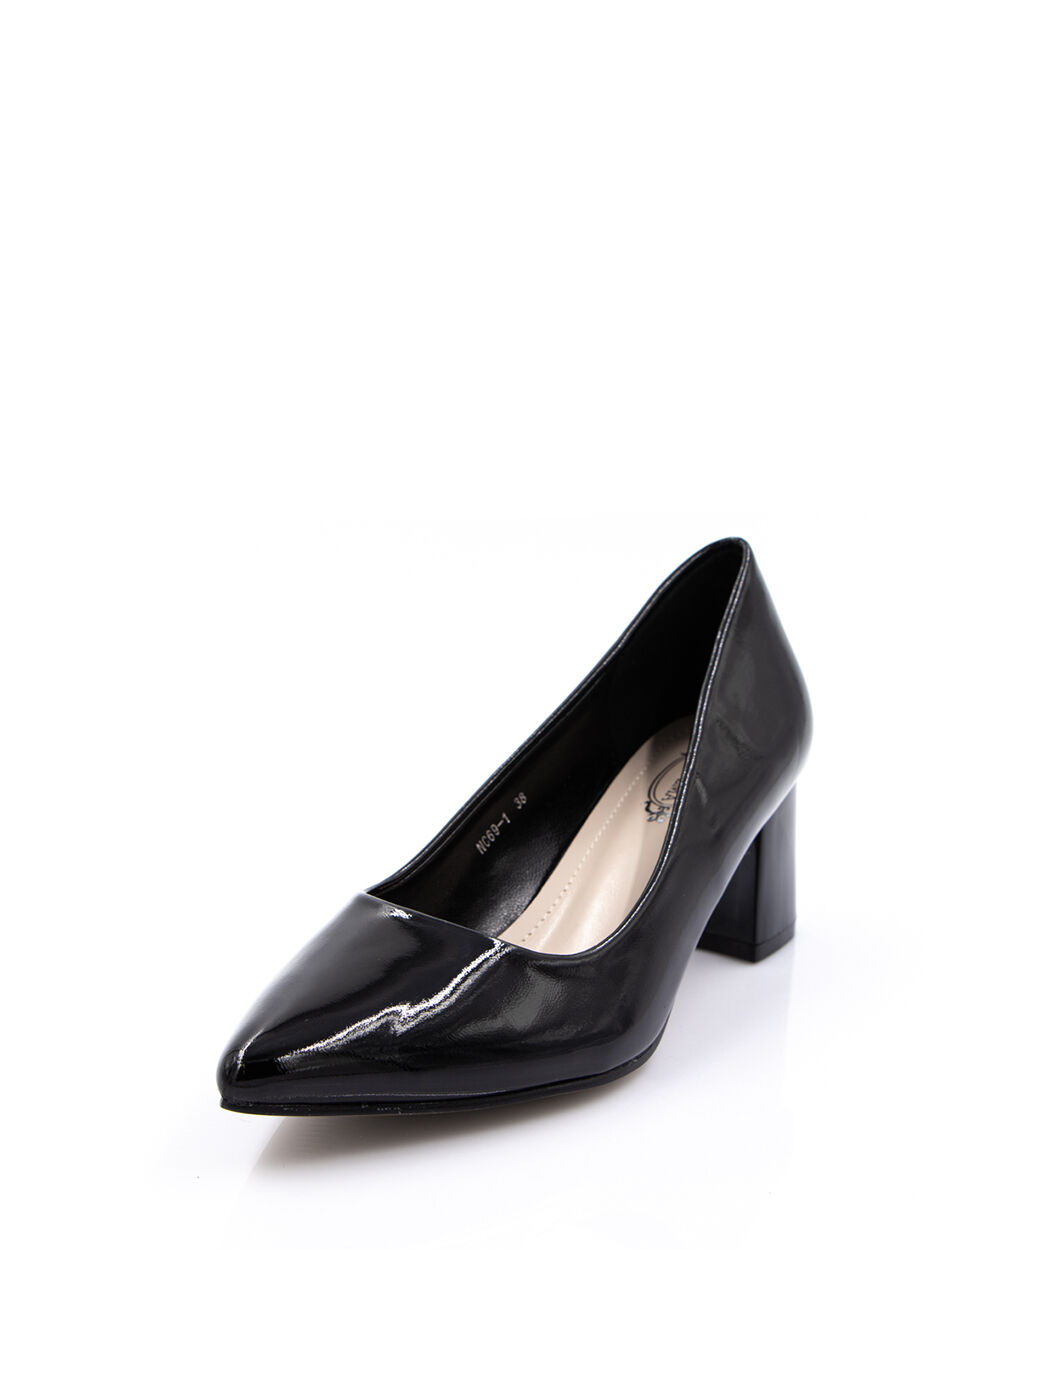 Туфли женские черные искусственный лак каблук устойчивый демисезон от производителя 1M вид 0